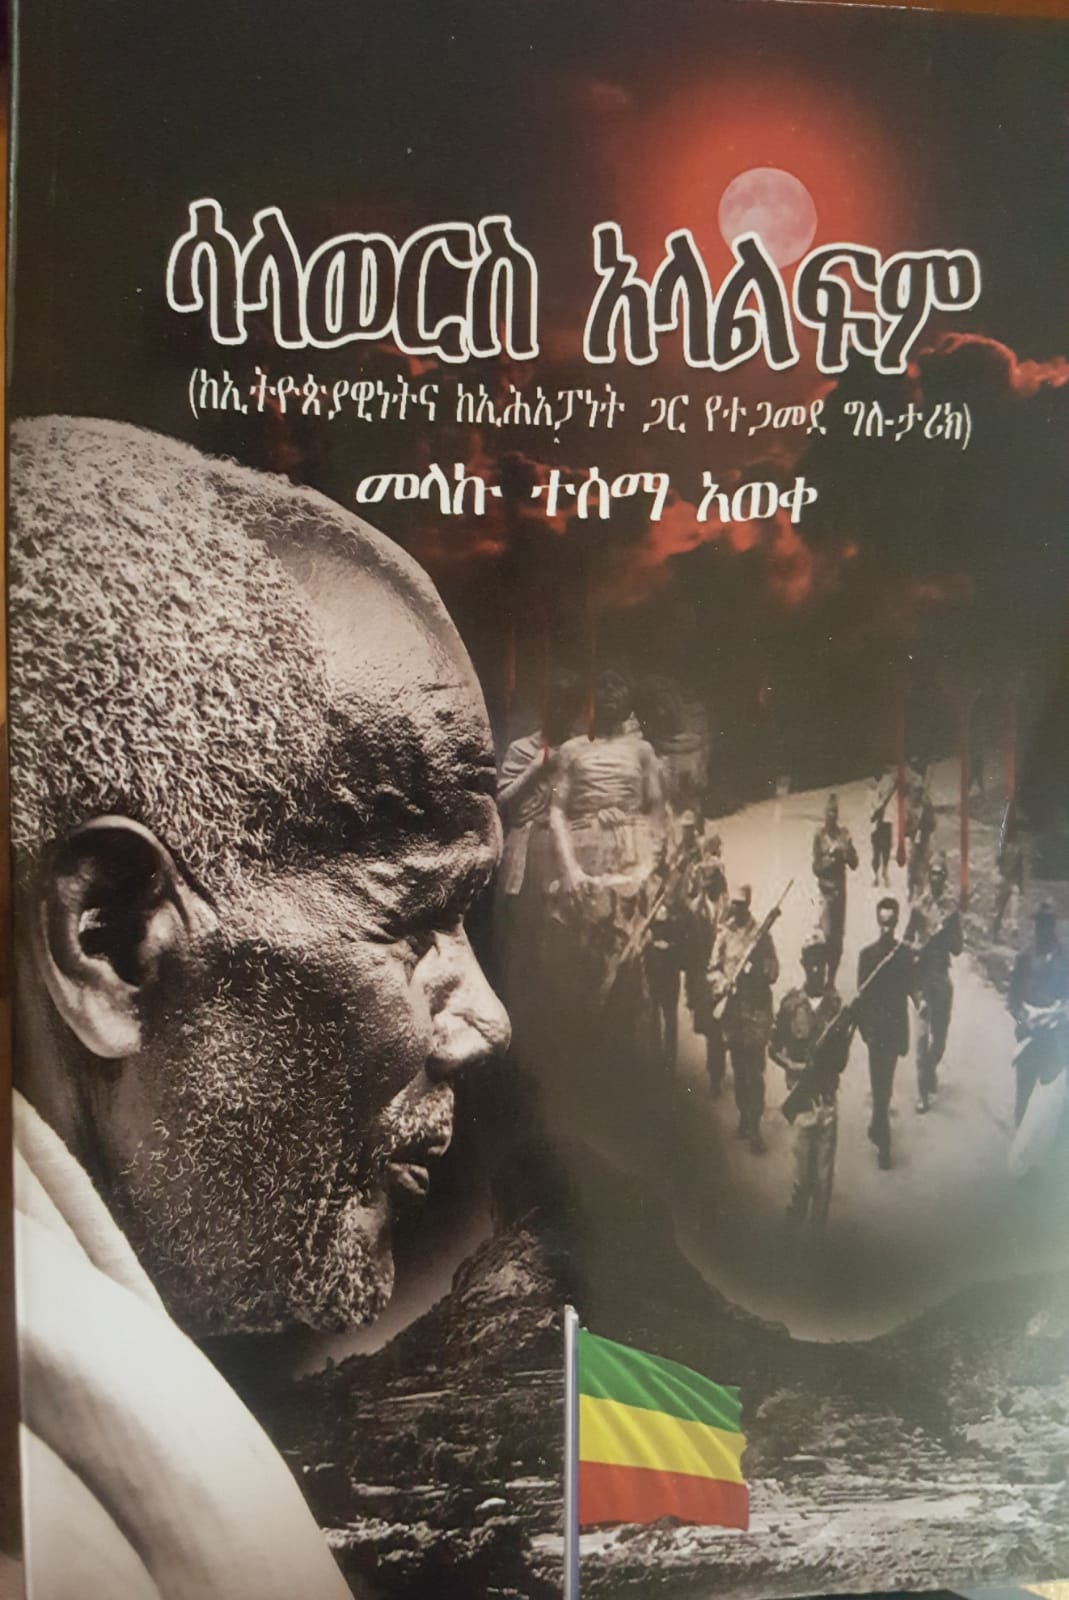 ሳላወርስ ኣላልፍም ኣዲስ መጽሃፍ በቶሮንቶ ተመረቀ An autobiography account of Ethiopia’s Torture